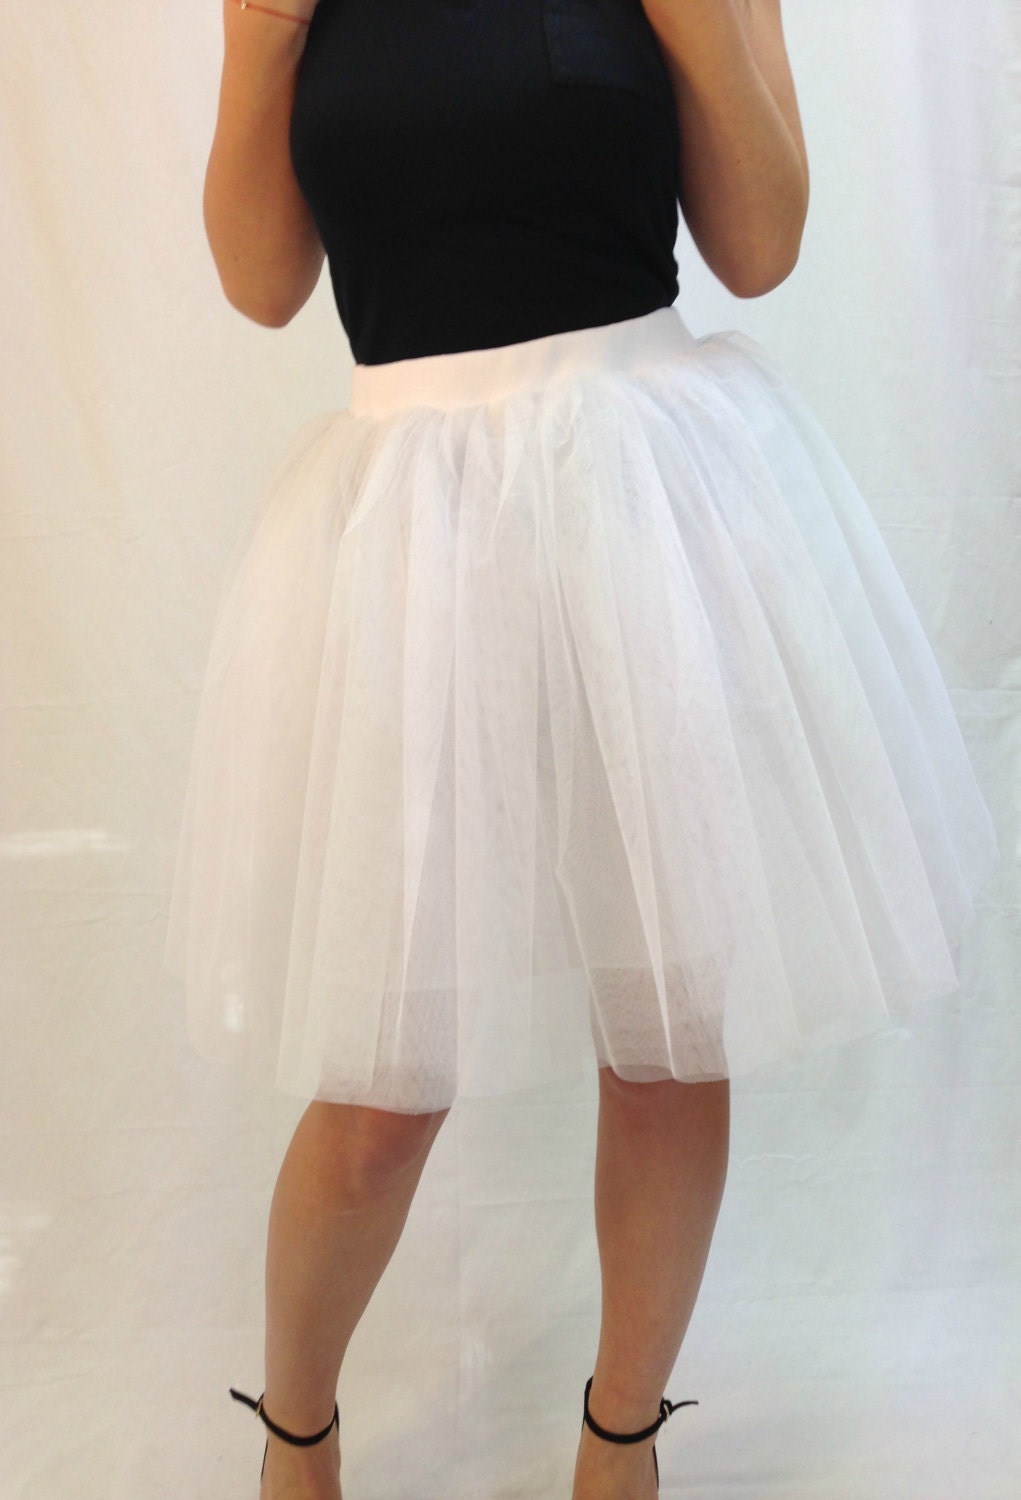 White Women Tulle Skirt Knee Length Tutu Skirt By Mdsewingatelier 4291